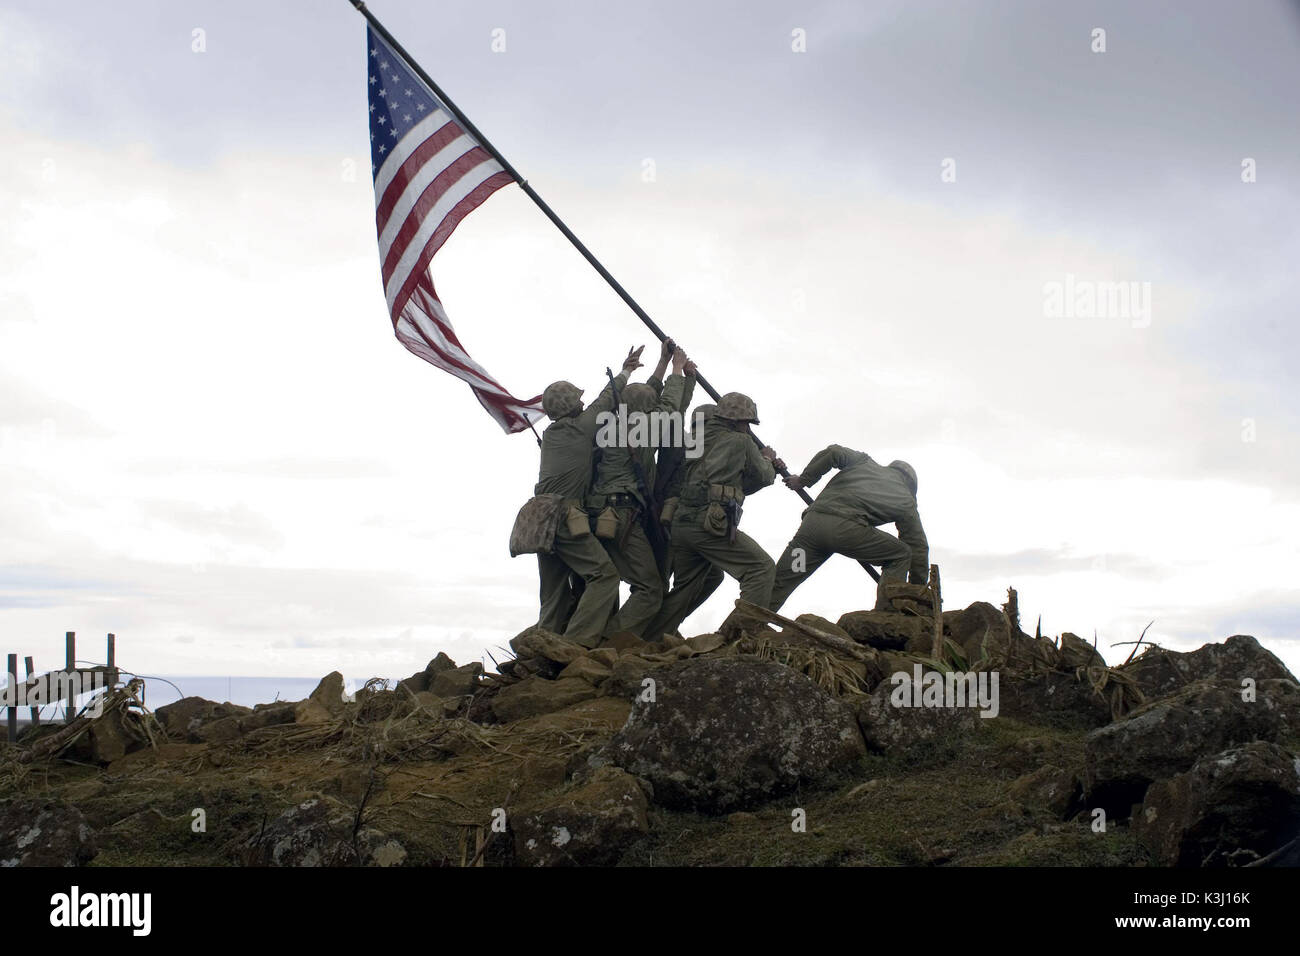 La levée du drapeau américain sur Iwo Jima est l'un des plus durable des images dans l'histoire et sert de moment charnière de DreamWorks Pictures et Warner Bros Pictures' la seconde guerre mondiale Théâtre drapeaux de nos pères, réalisé par Clint Eastwood. Drapeaux de nos pères nous [2006] [la levée du drapeau américain sur Iwo Jima durant la Seconde Guerre mondiale] Date : 2006 Banque D'Images